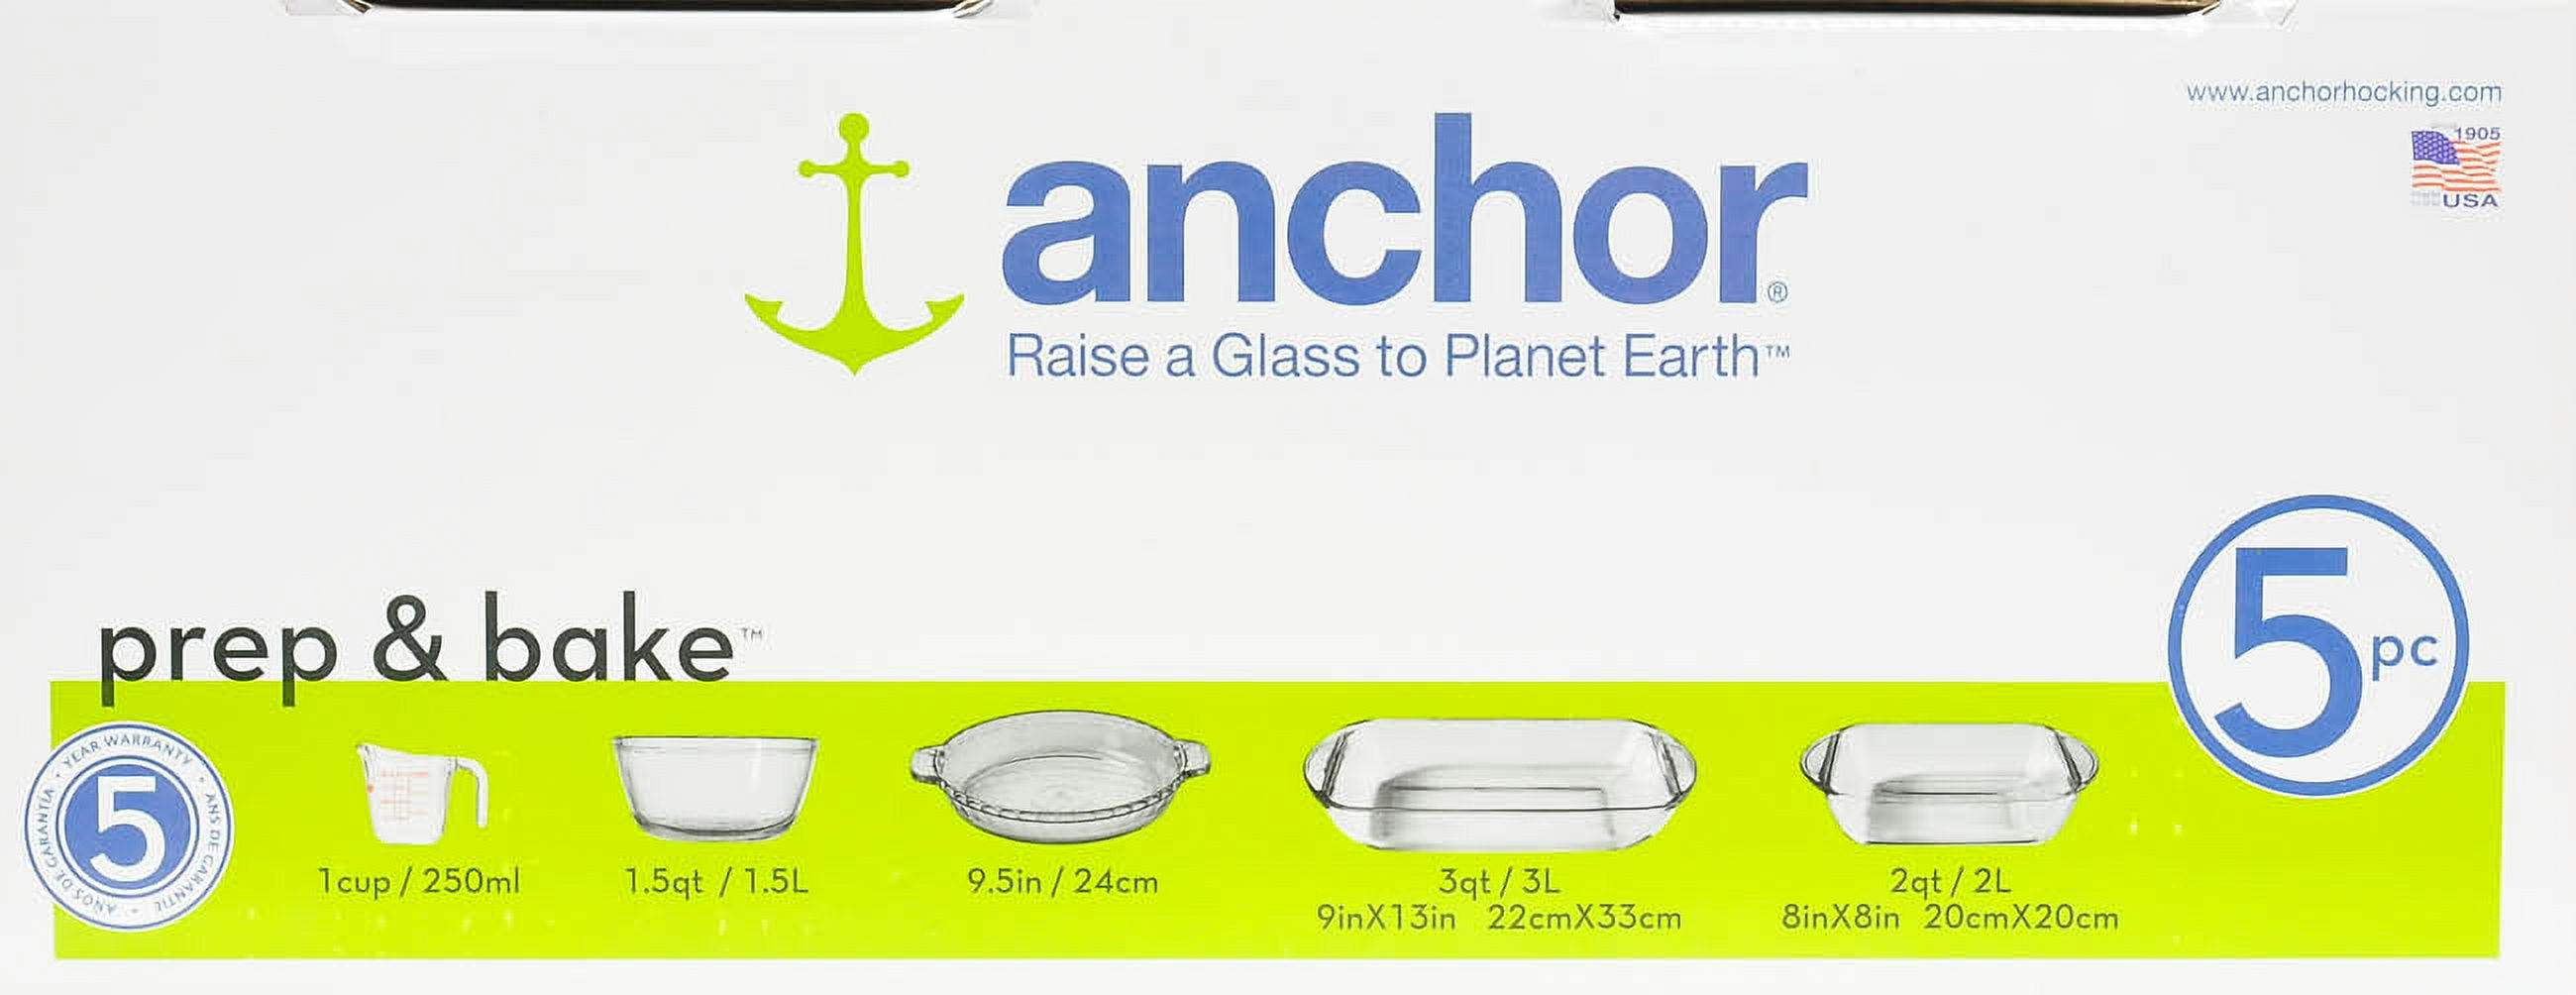 Anchor Hocking Basic Bakeware Set, 5 Piece - image 4 of 5